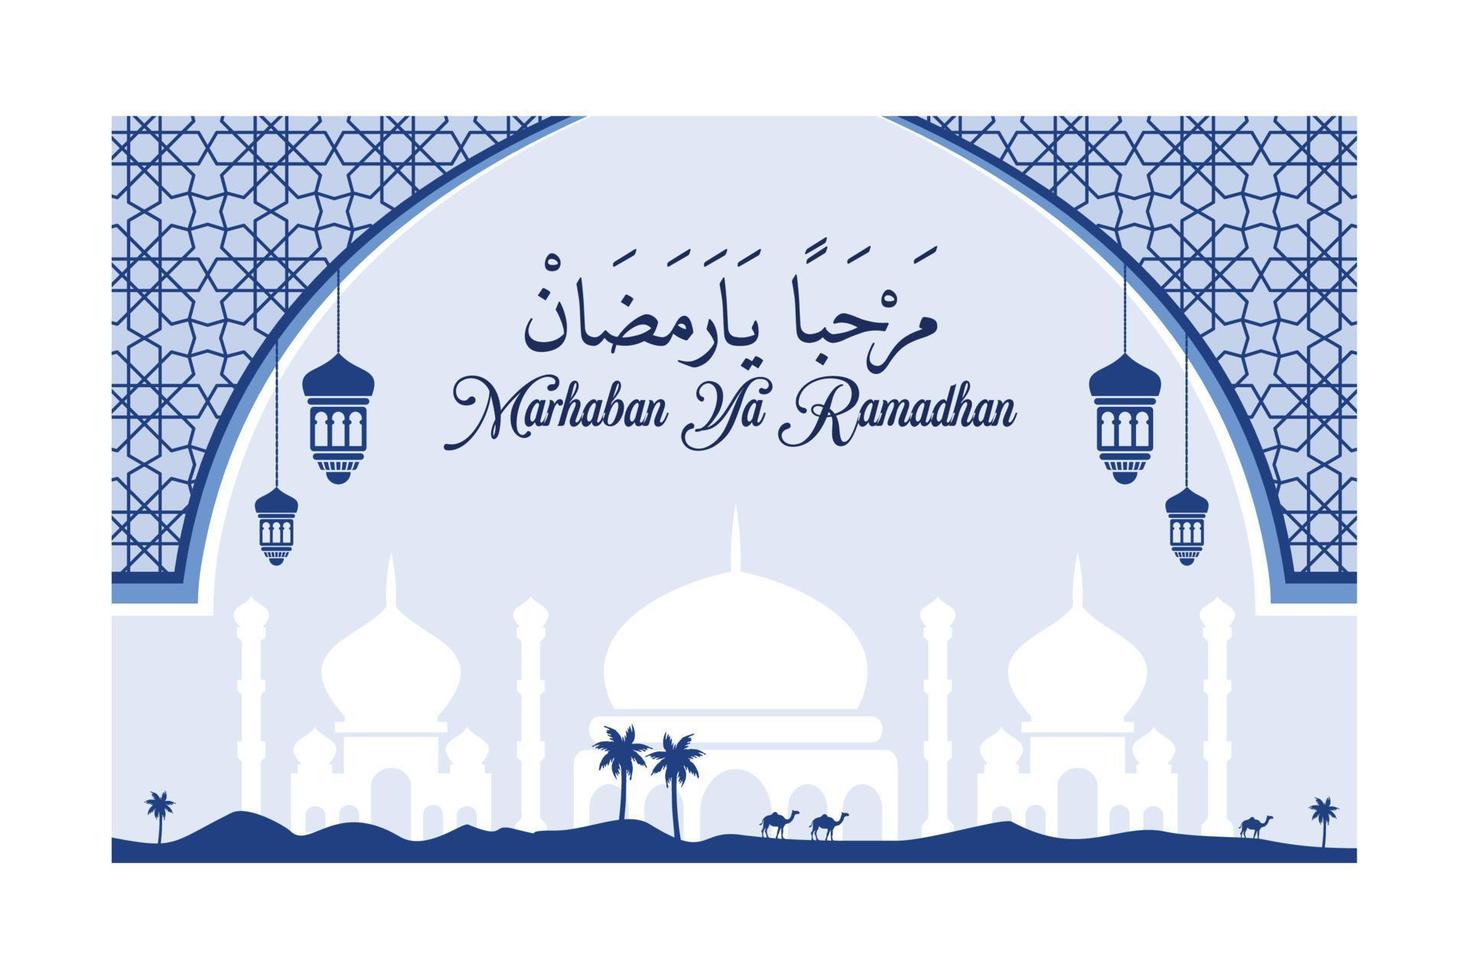 beaux arrière-plans pour les salutations du ramadan et le texte de marhaban ya ramadhan signifie bienvenue au mois du ramadan vecteur